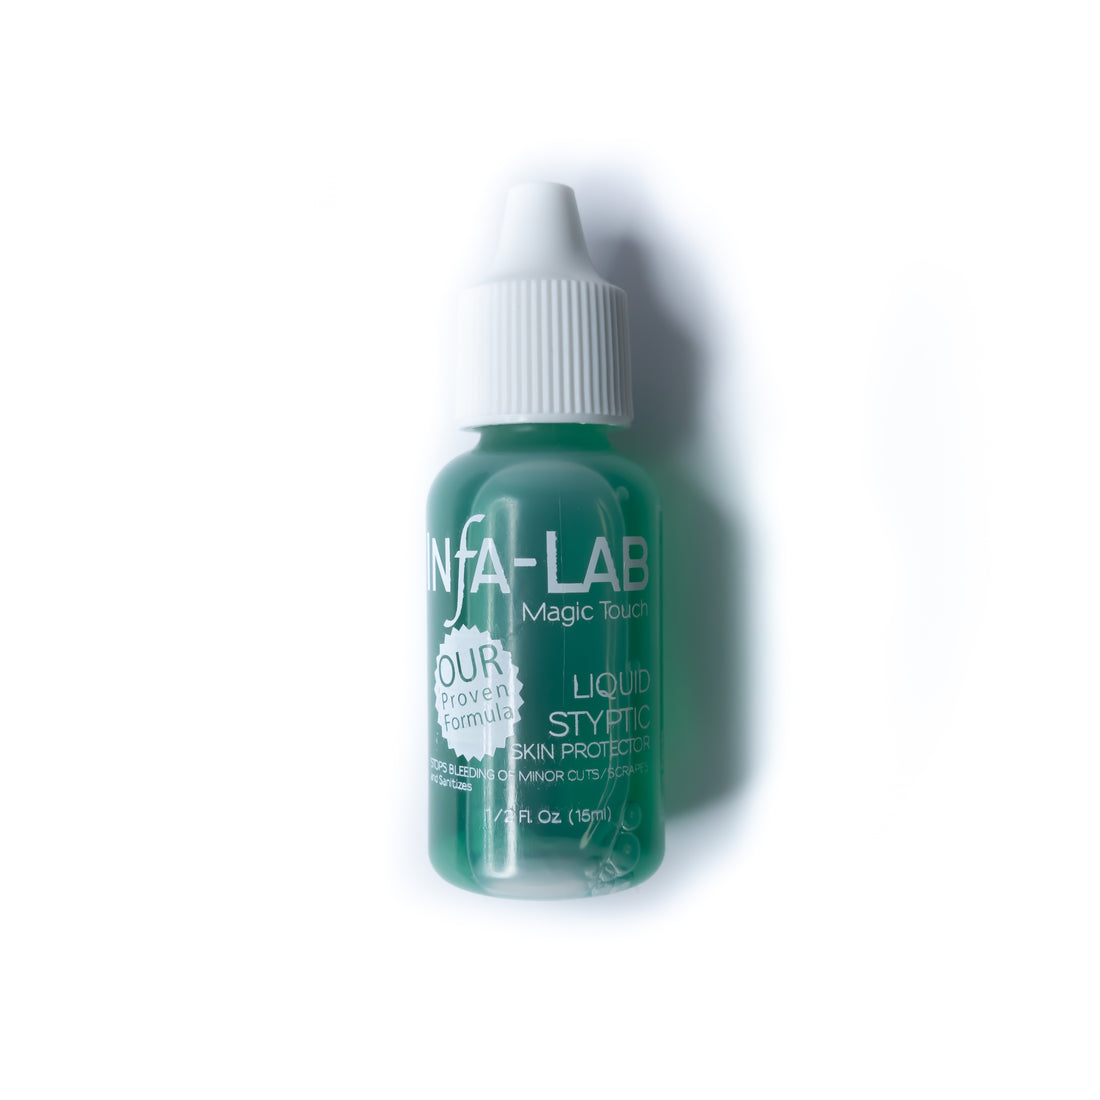 Mia secret Resin Glue – A&G Nail Supplies Inc